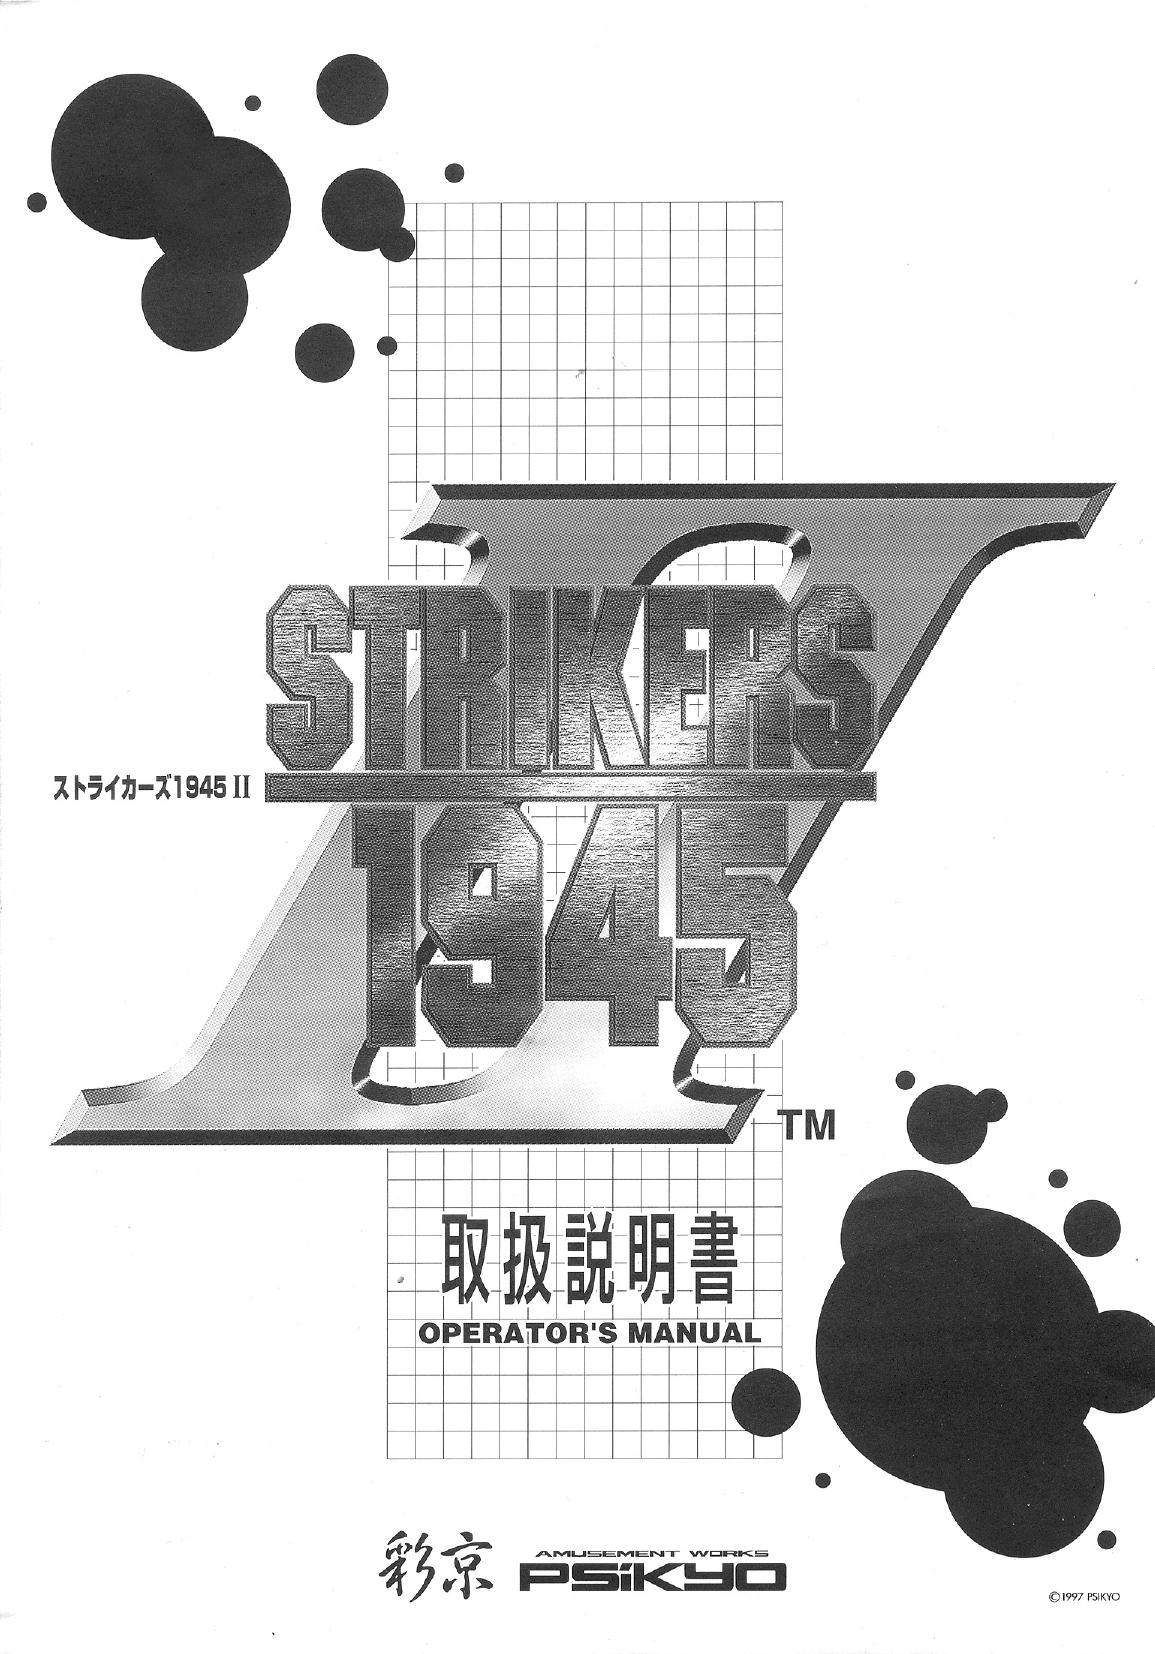 Strikers 1945 2